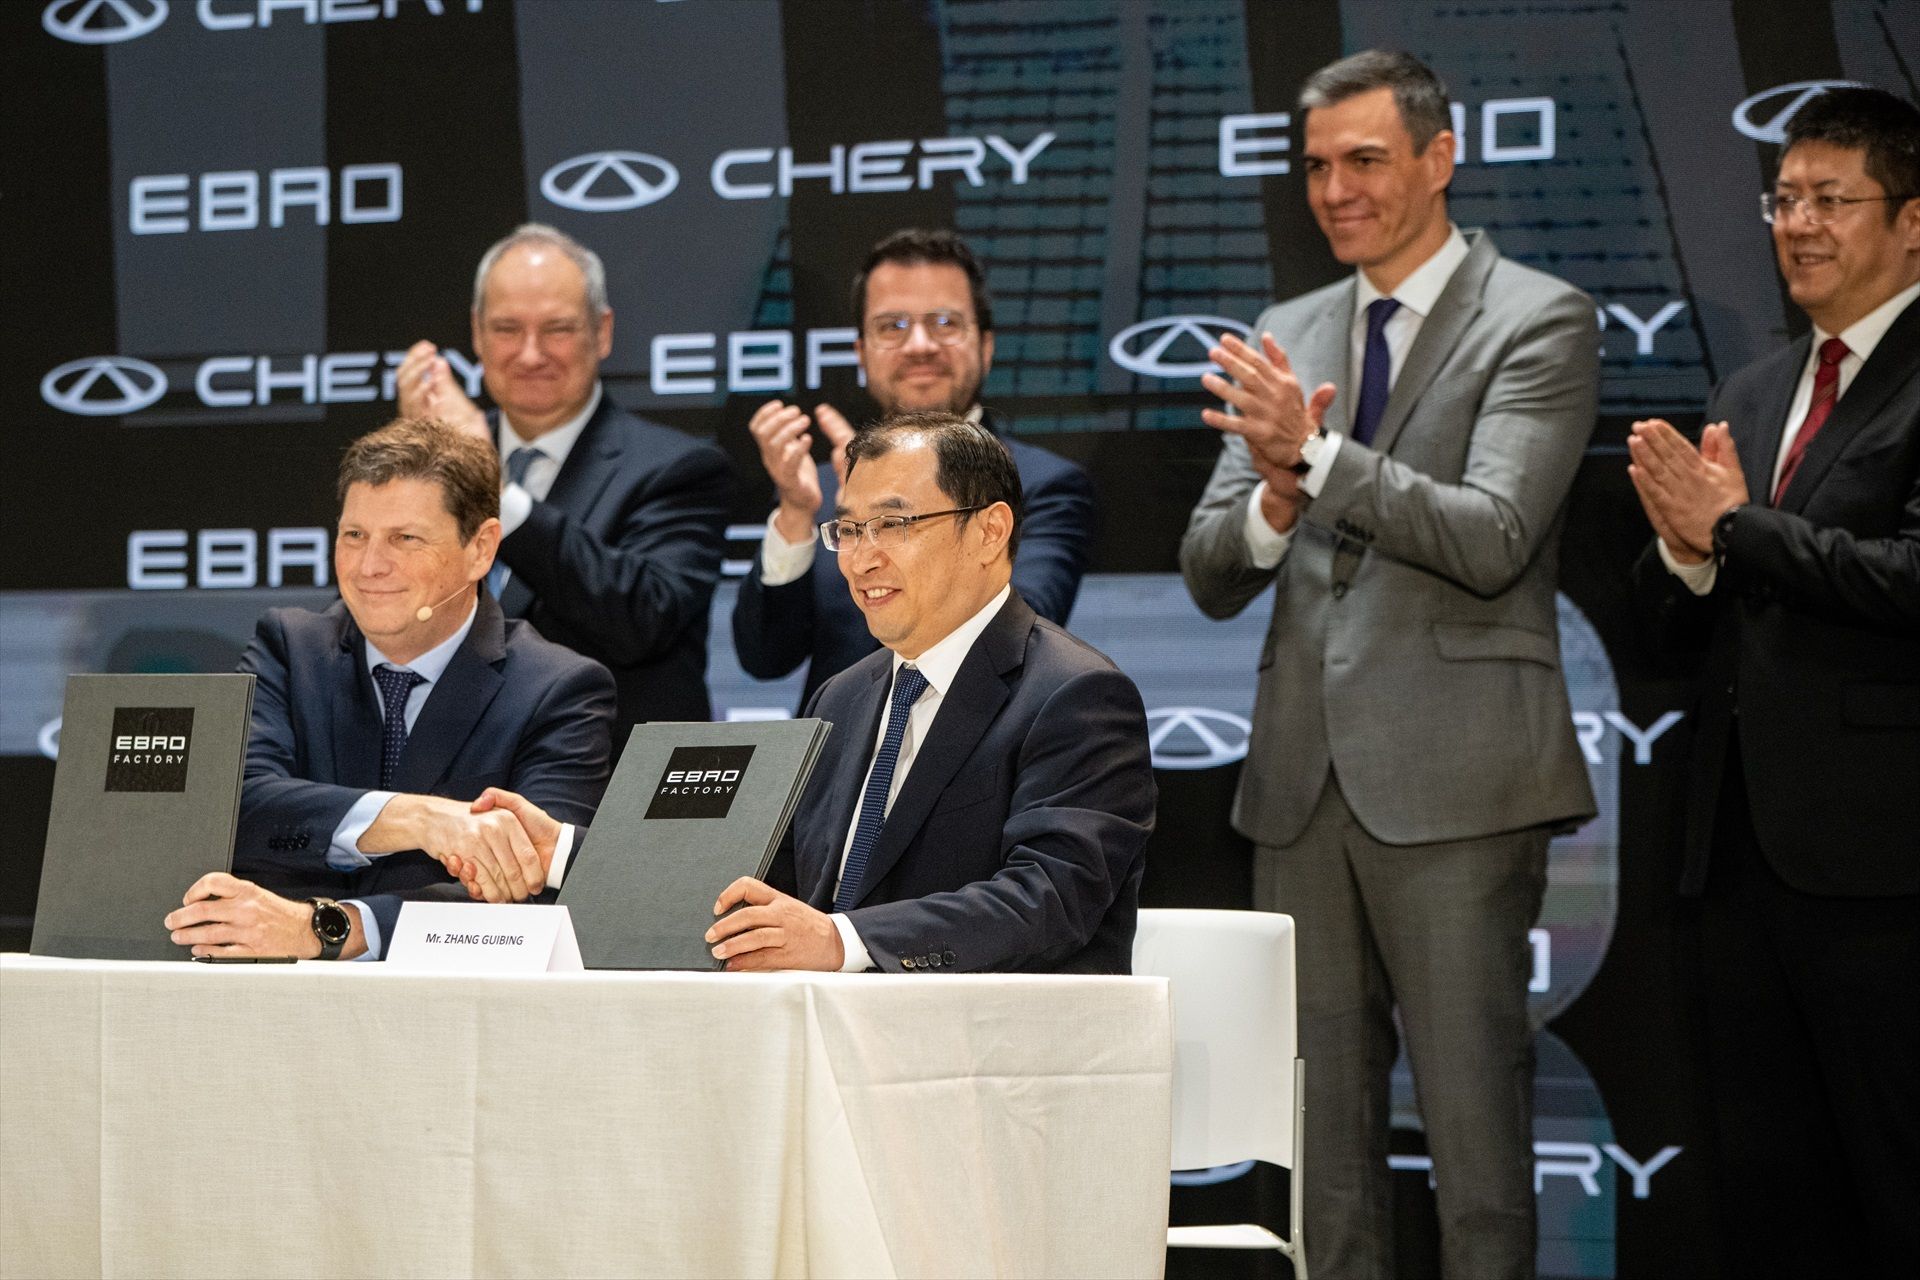 El moment en què Ebro i Chery signen l'acord per produir cotxes elèctrics a l'antiga fàbrica de Nissan a Barcelona